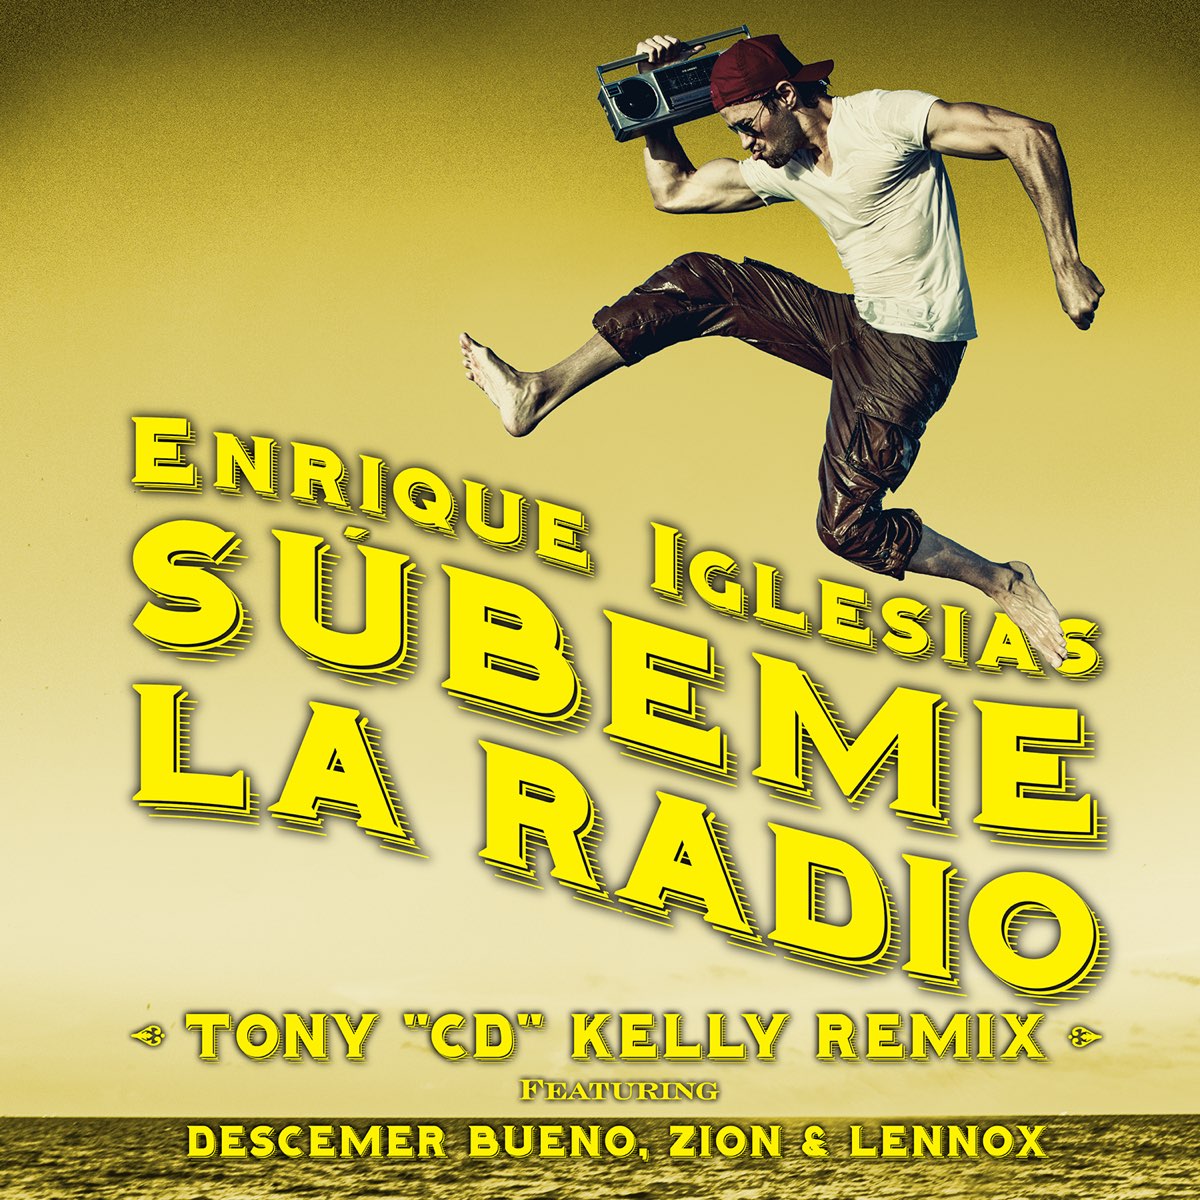 Raza humana levantar bosque SÚBEME LA RADIO (feat. Descemer Bueno & Zion & Lennox) [Tony "CD" Kelly  Remix] - Single de Enrique Iglesias en Apple Music